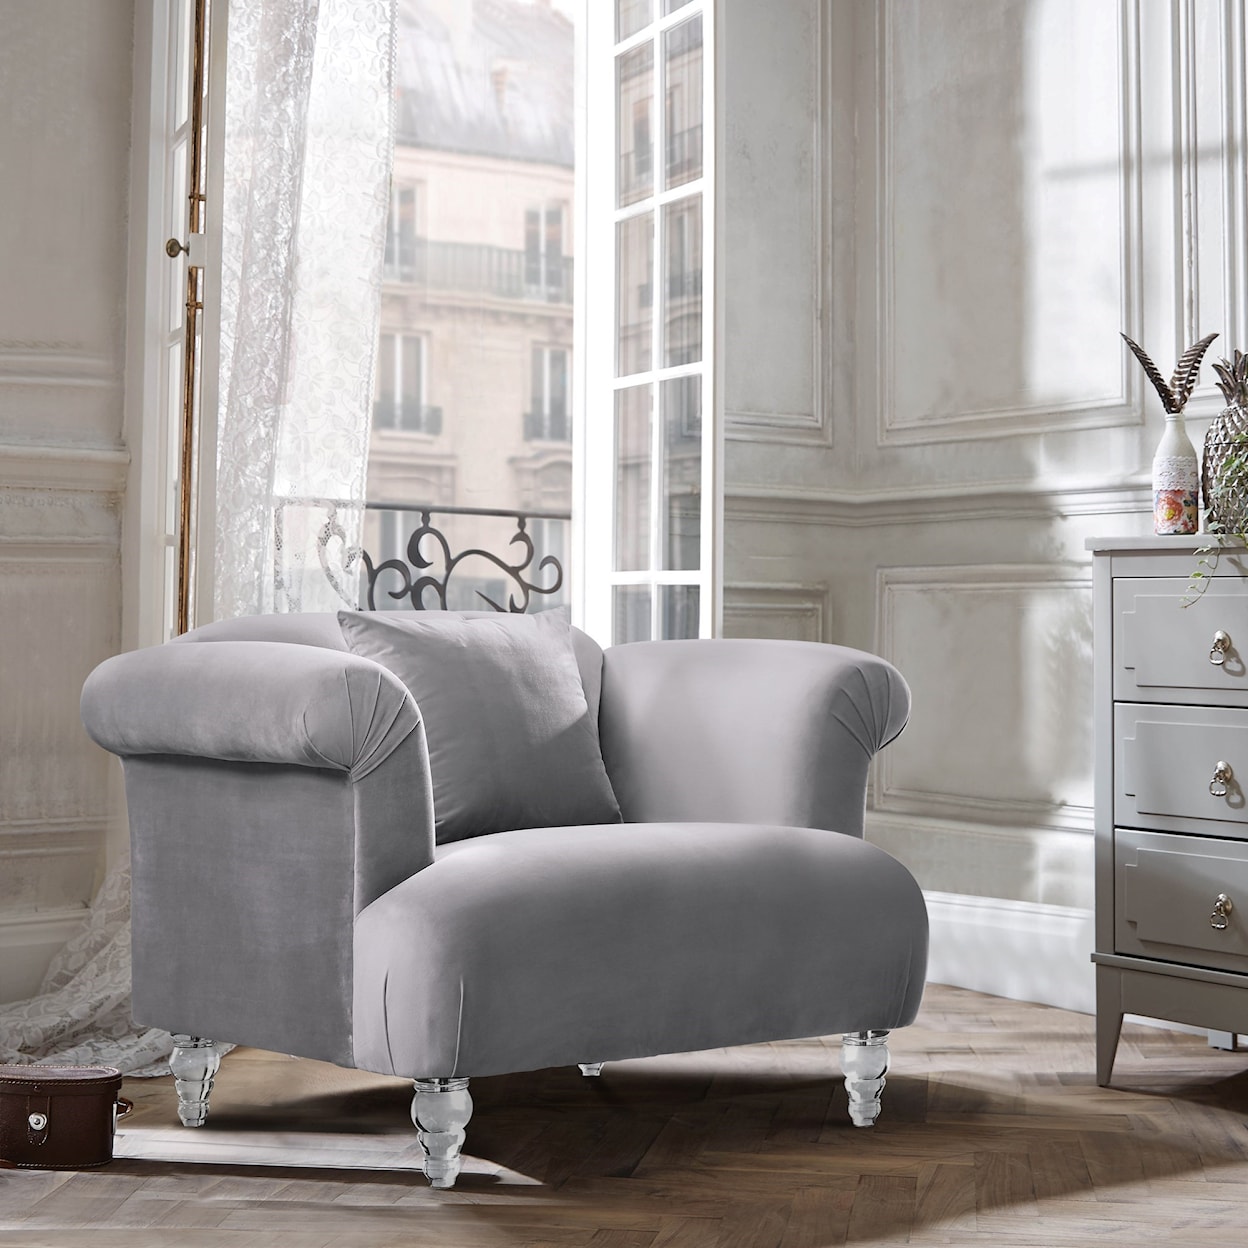 Armen Living Elegance Contemporary Chair in Velvet